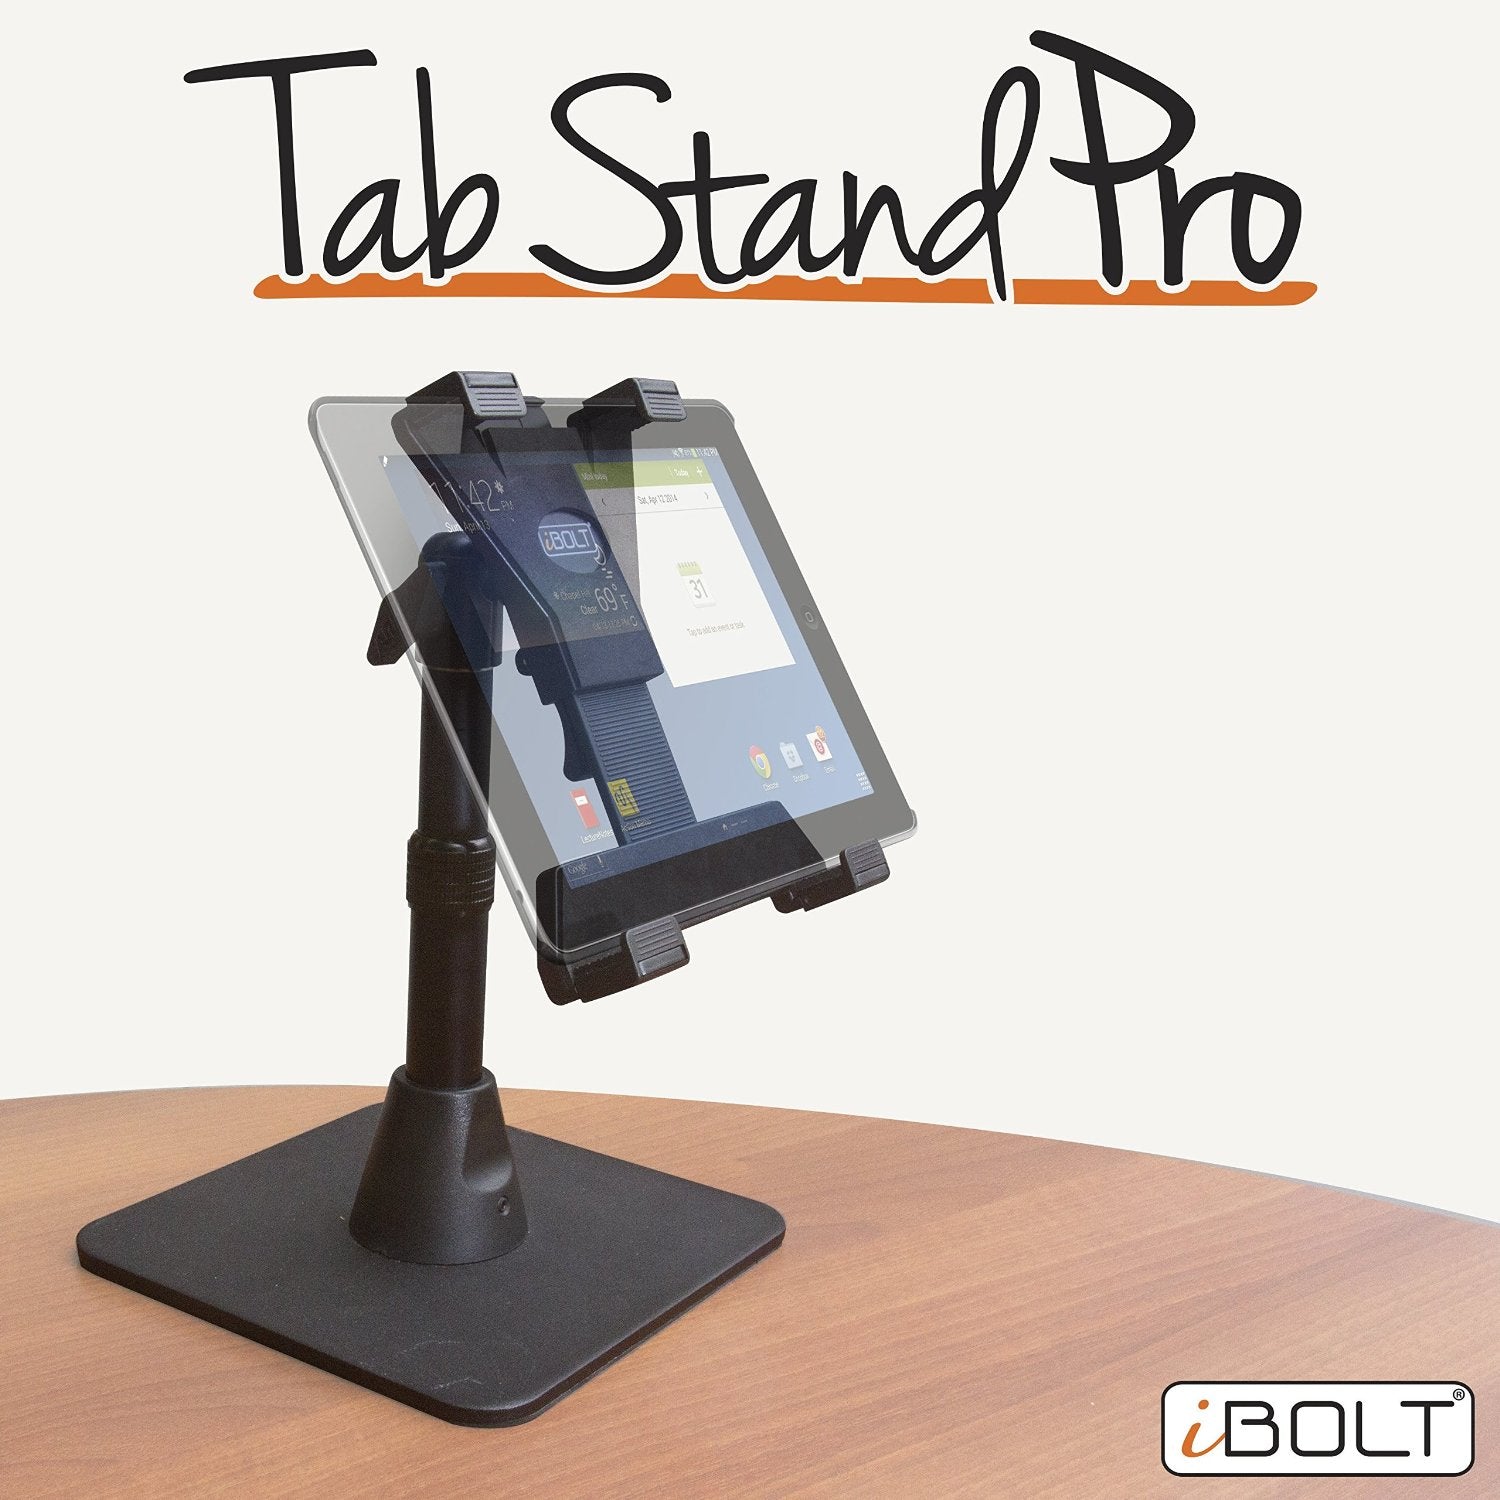 iBOLT™ TabStand Pro